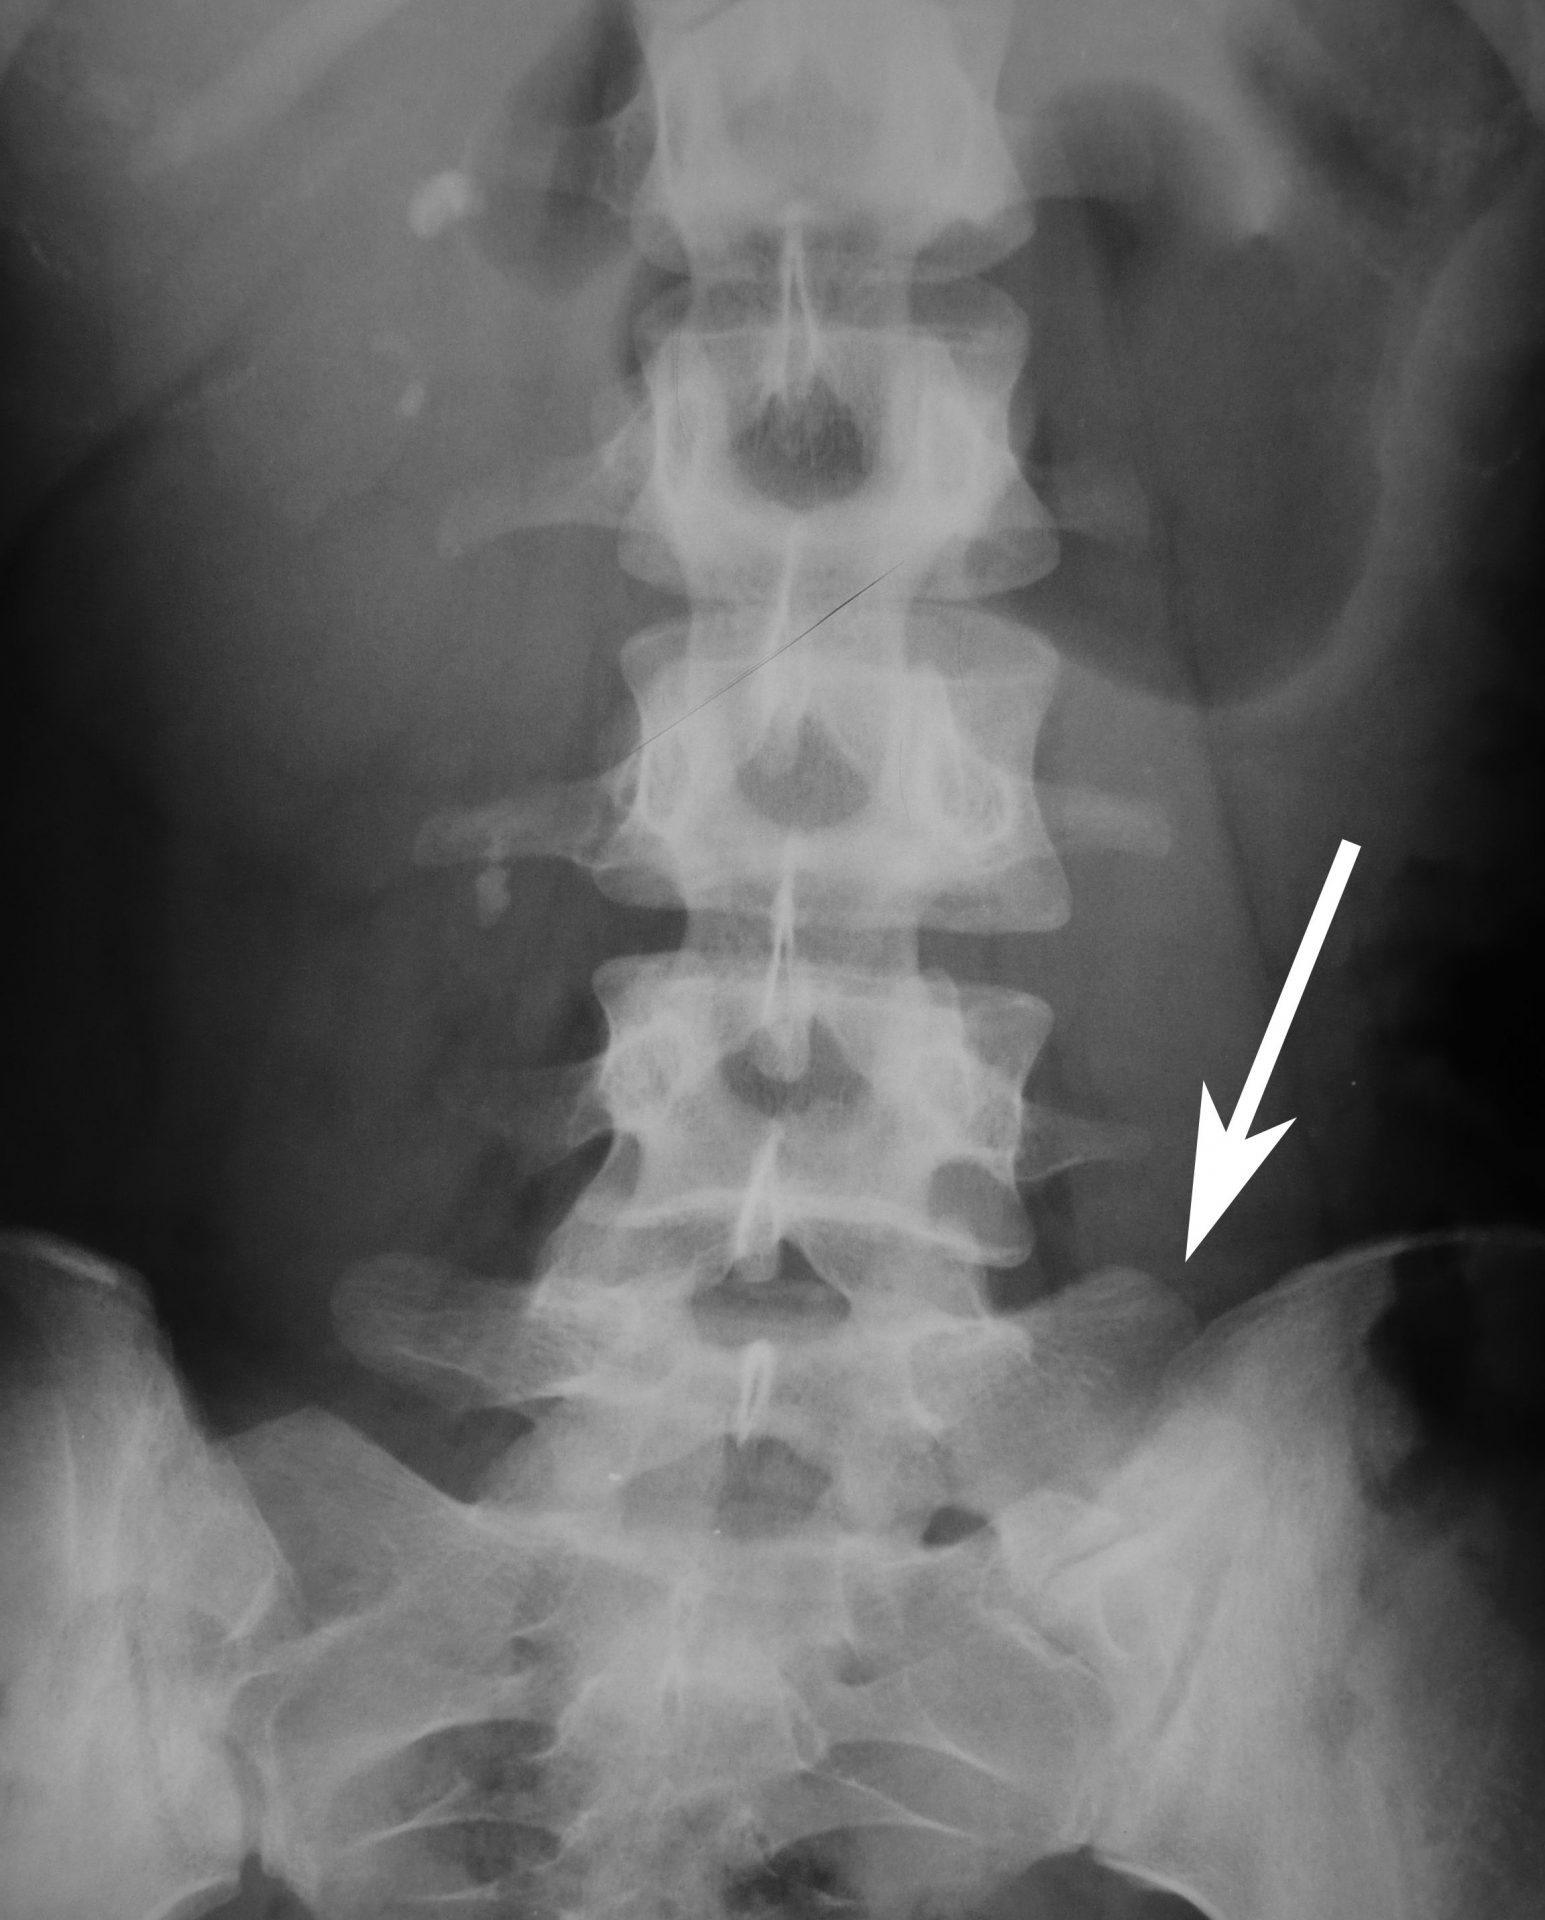 Röntgenbild mit Sakralisierung